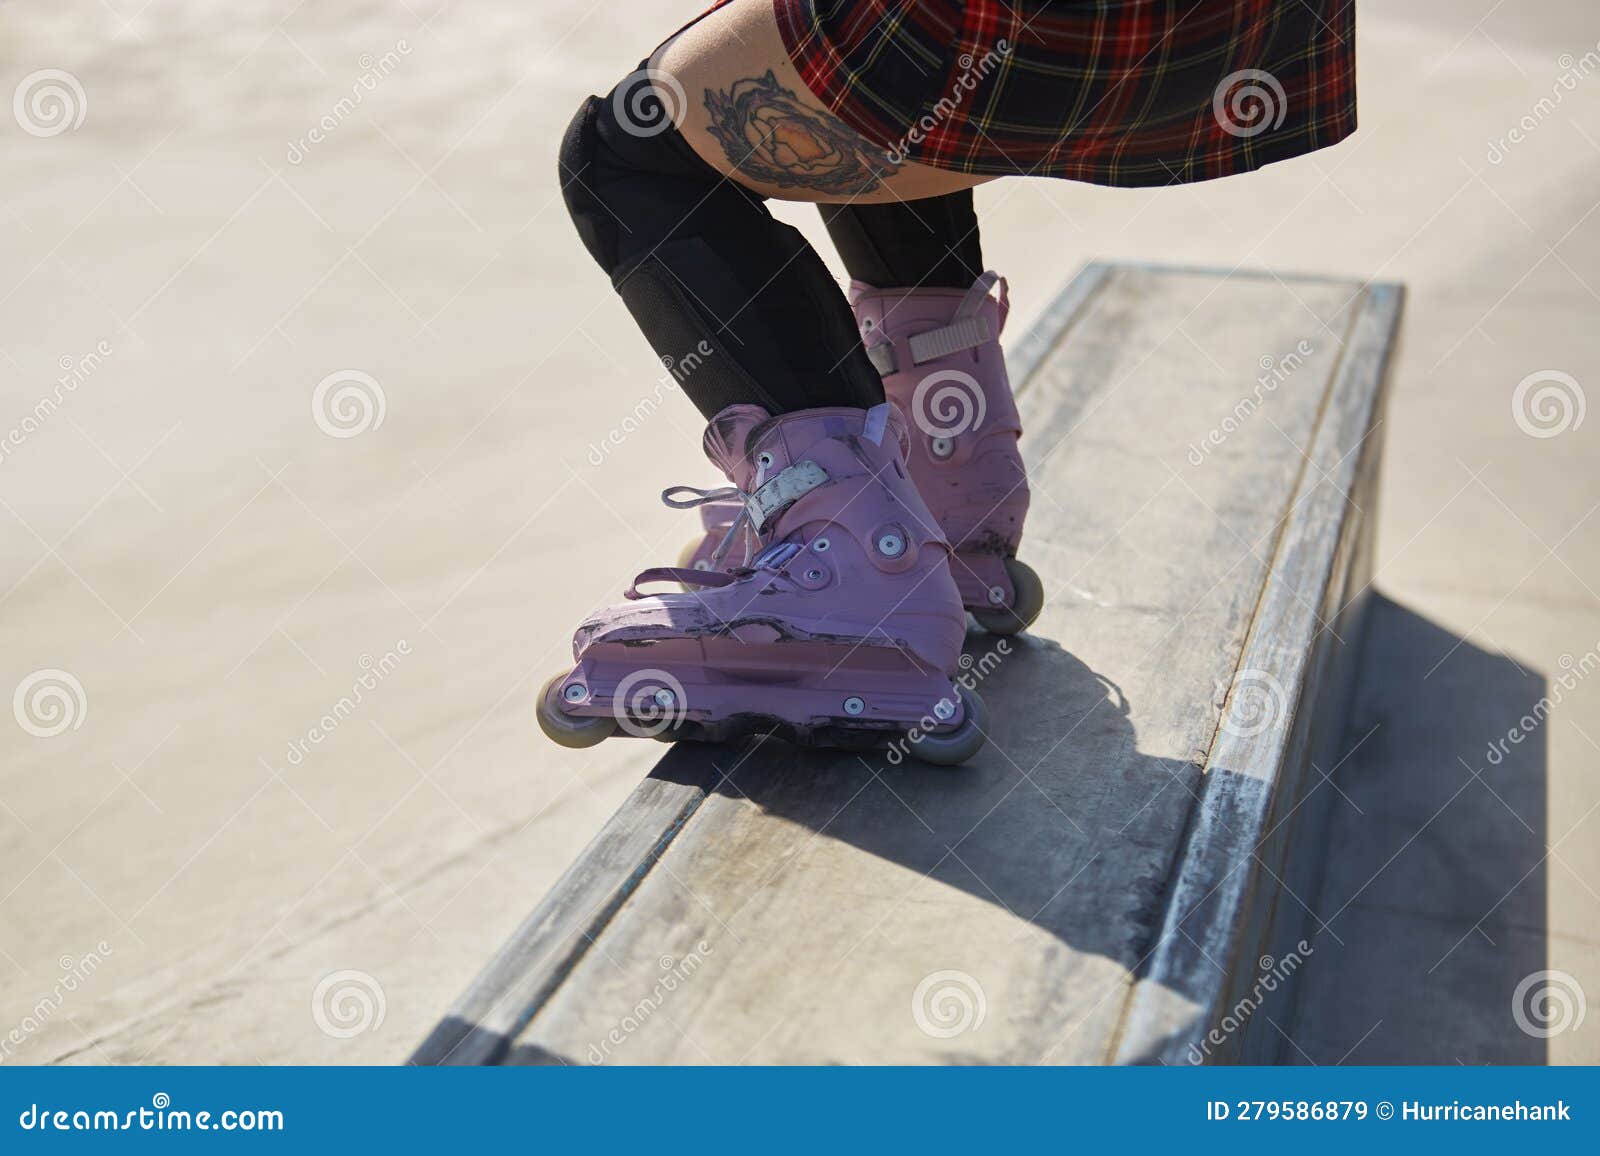 Skater Girl Grinding on a Ledge in a Skatepark. Feet of Aggressive